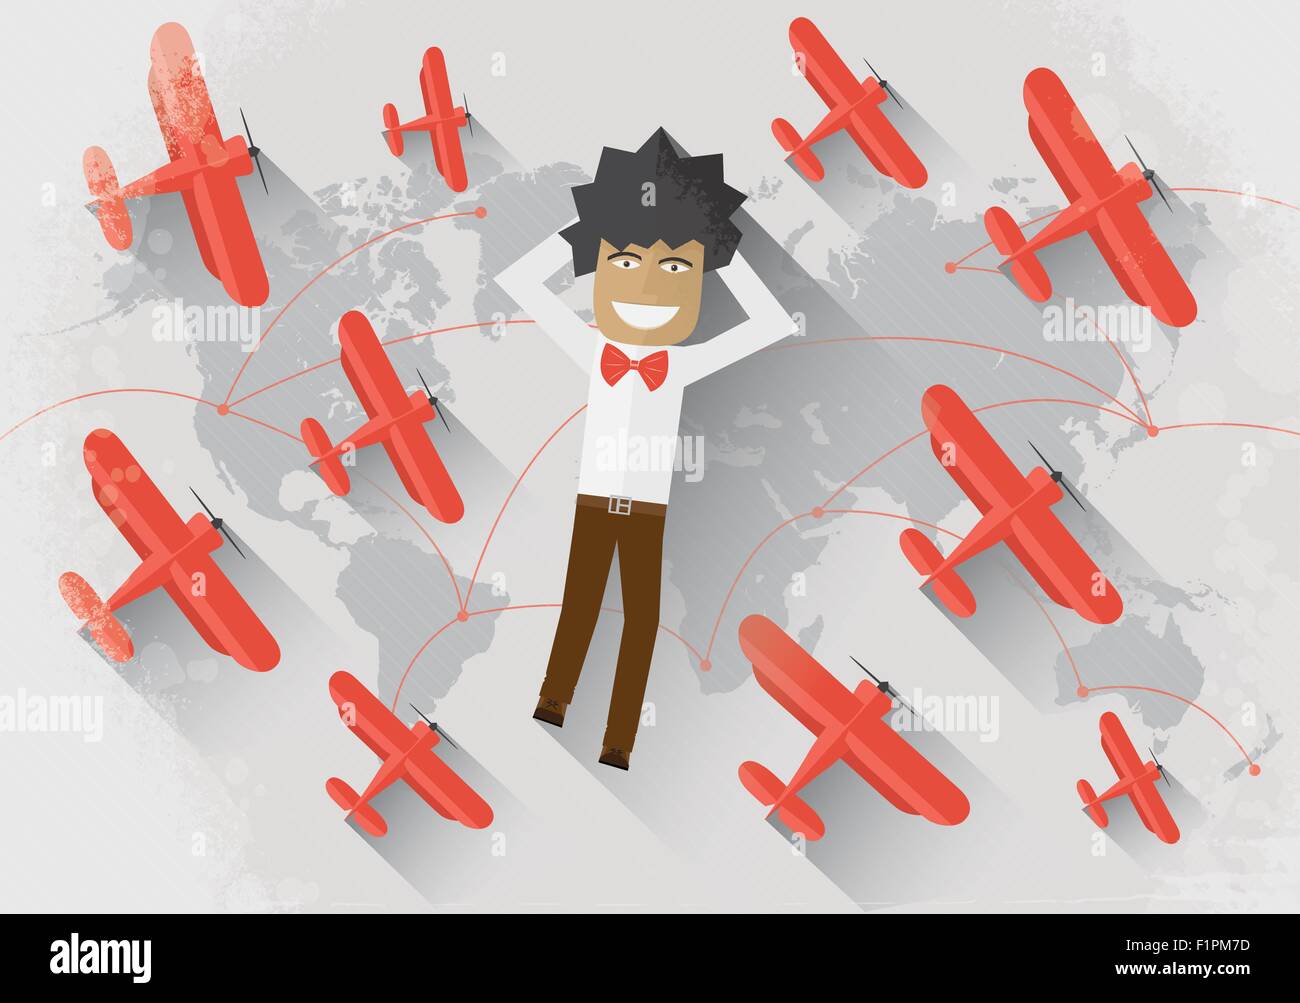 Reisen Sie Konzept Mann liegen auf der Weltkarte, umgeben von roten Flugzeug und träumen von Reisen Stock Vektor